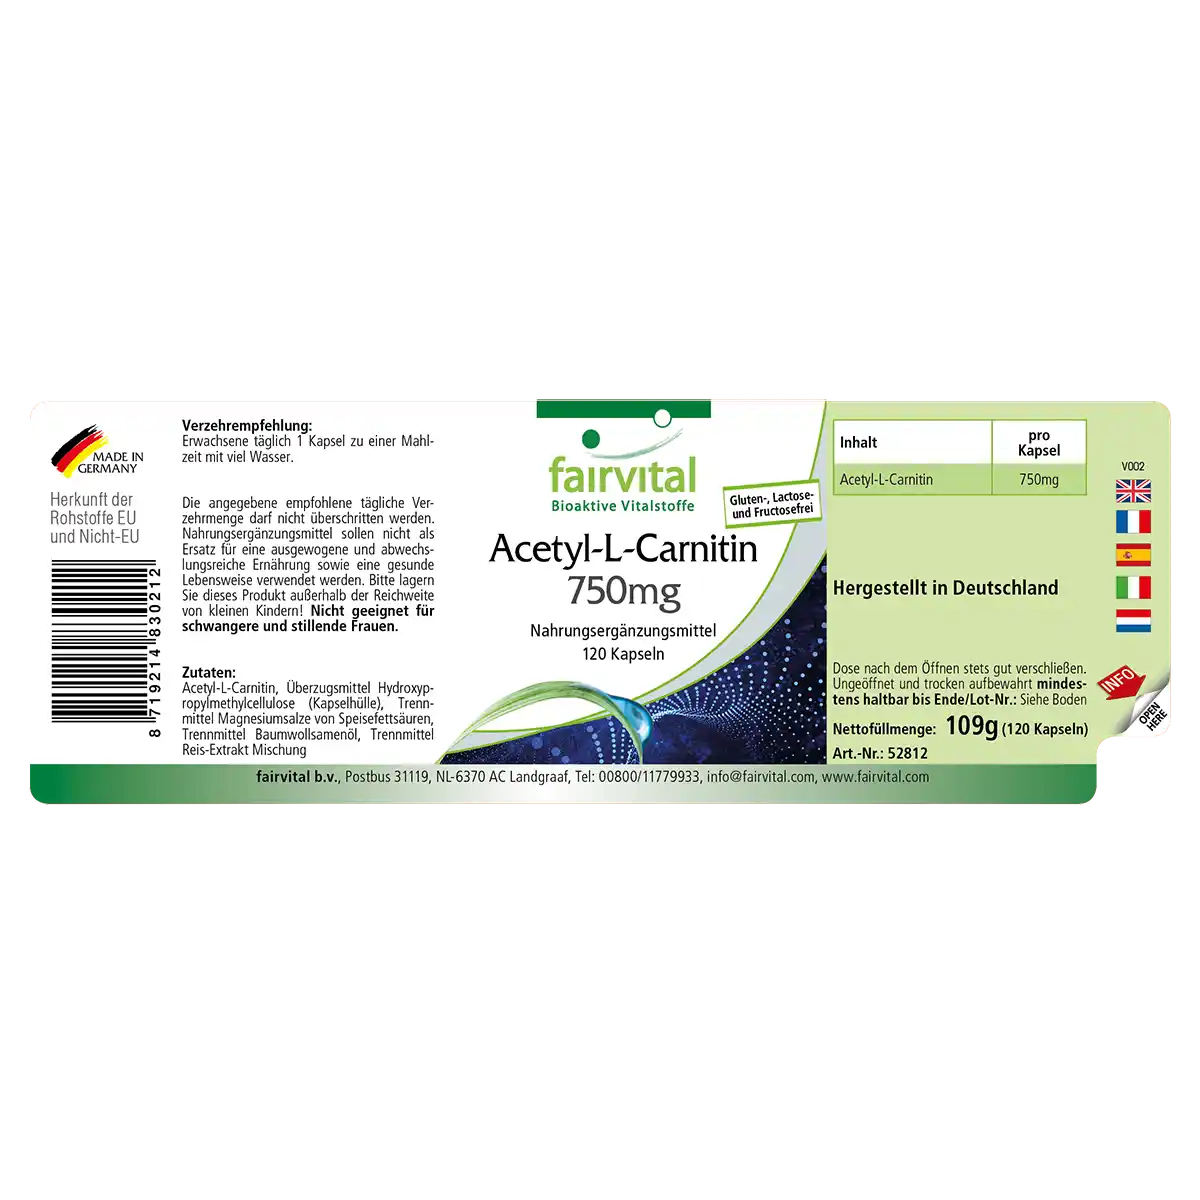 Acetil-L-Carnitina 750mg - 120 cápsulas